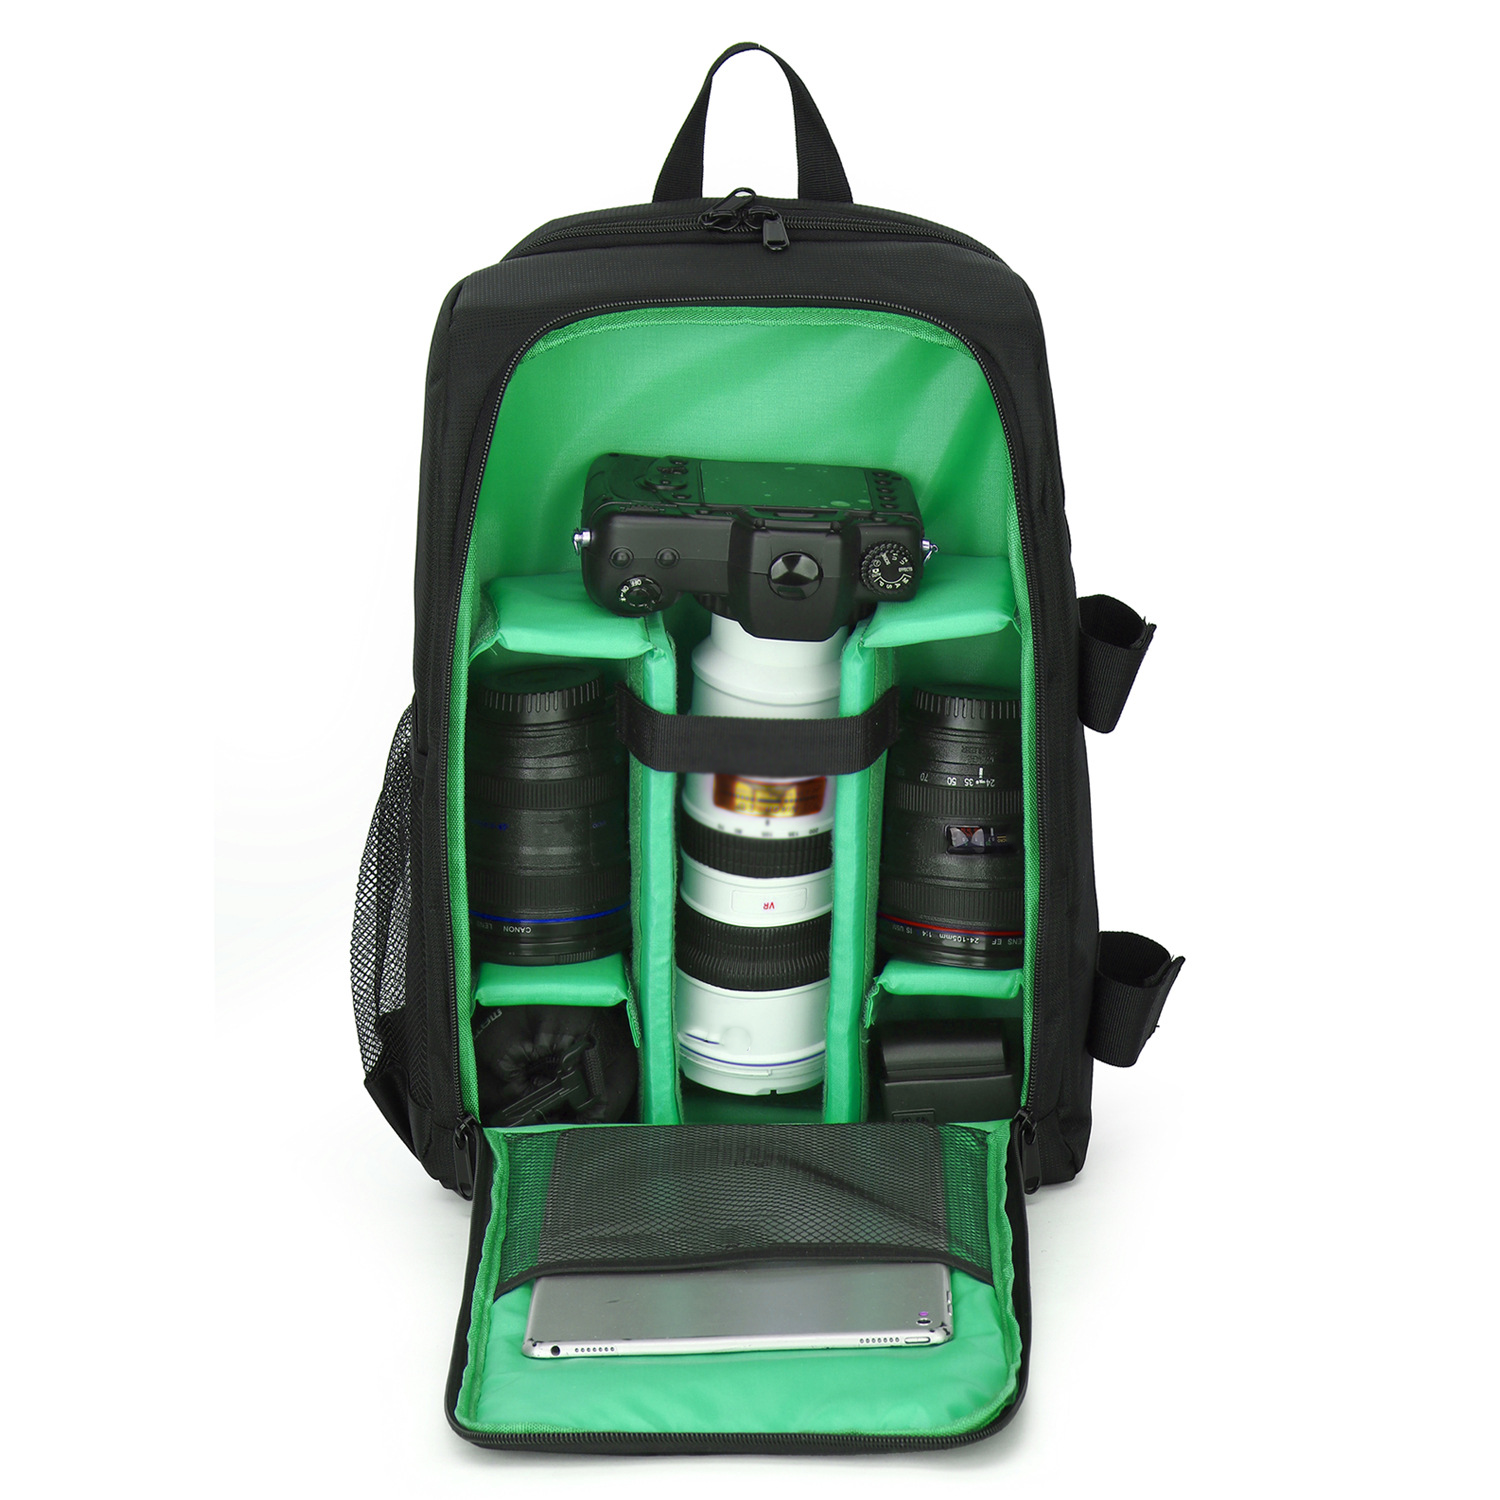 SYNTEK SLR wasserdicht Tasche Schultern grün Rucksäcke Kameratasche, tragen Outdoor-Fotografie Digitalkamera Tasche